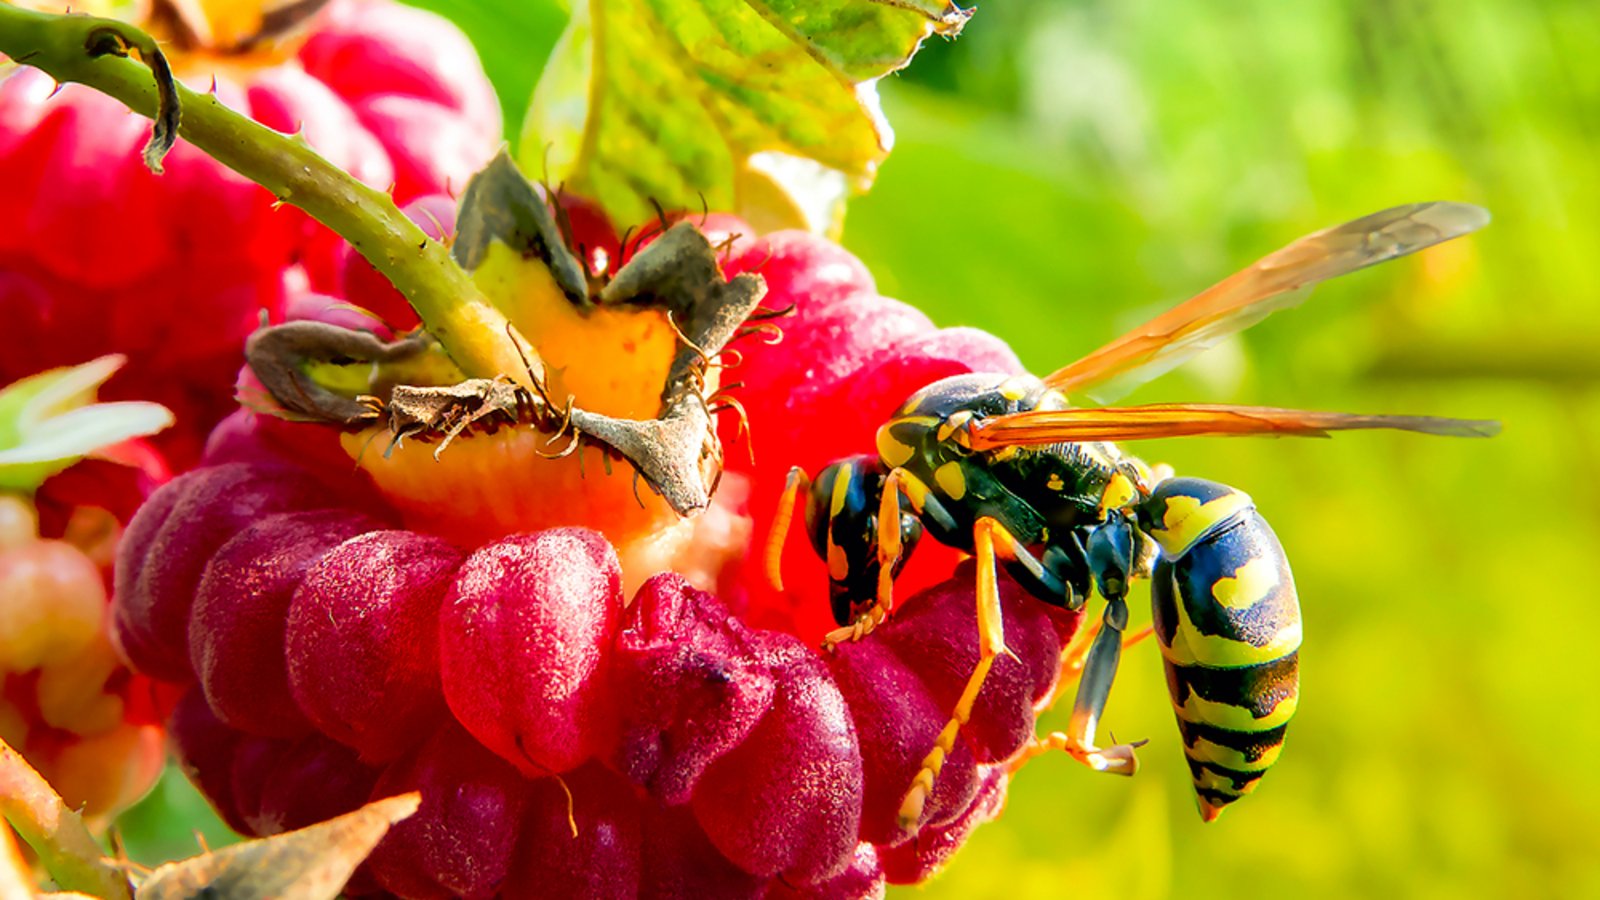 Wespenstiche sind schmerzhaft und können unangenehm jucken.Foto: Andrey Bocharov / shutterstock.com